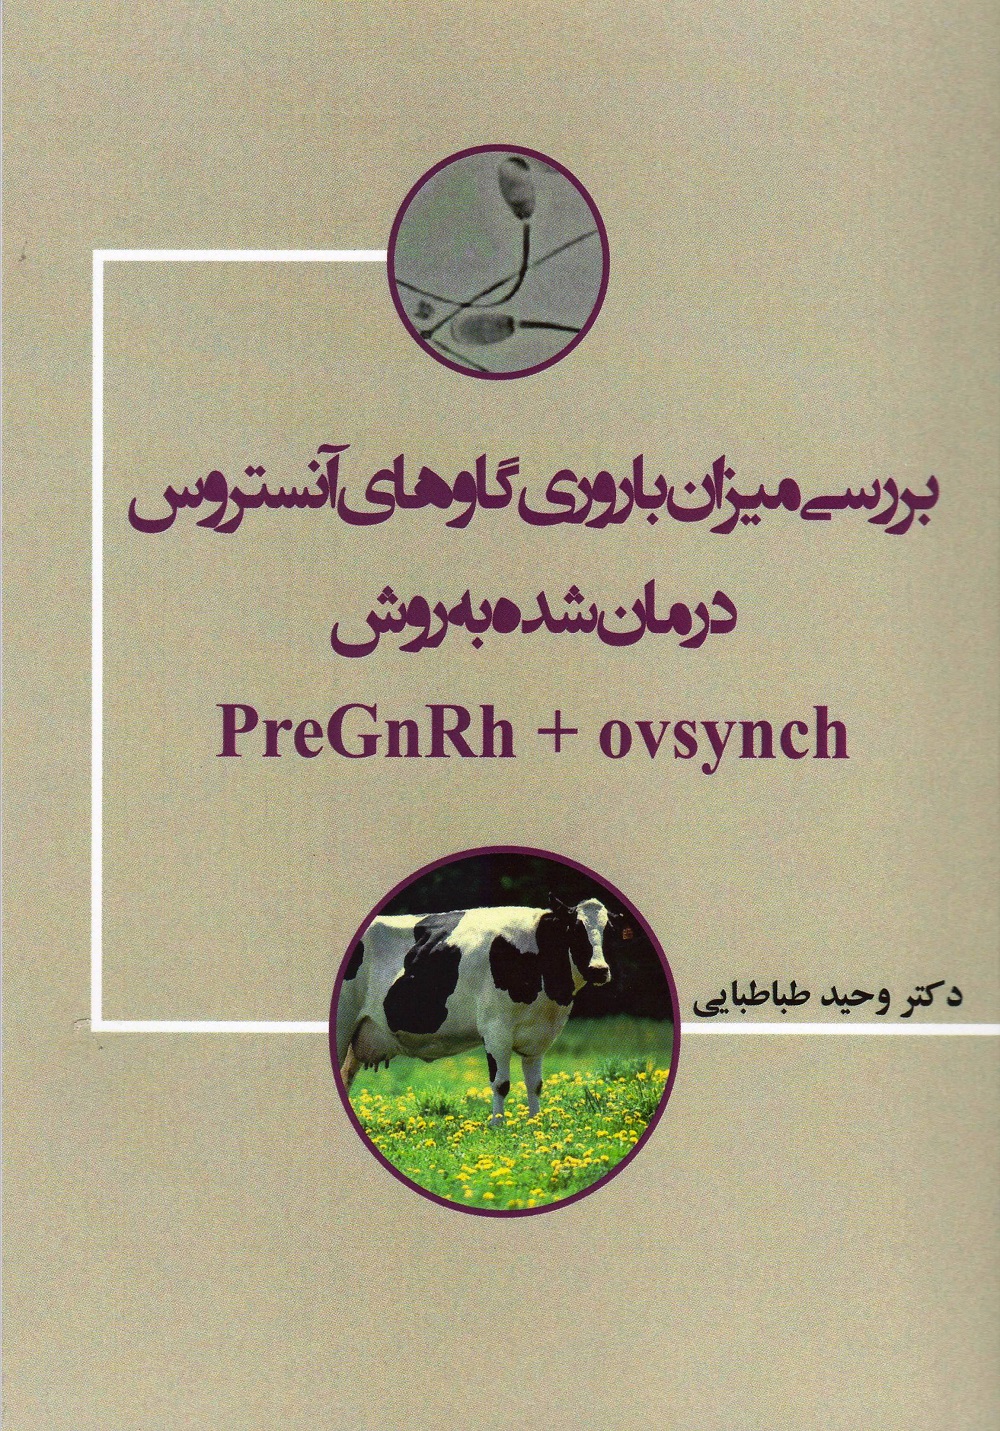 بررسی میزان باروری گاوهای آنستروس درمان شده به روش PreGnRh+ovsynch